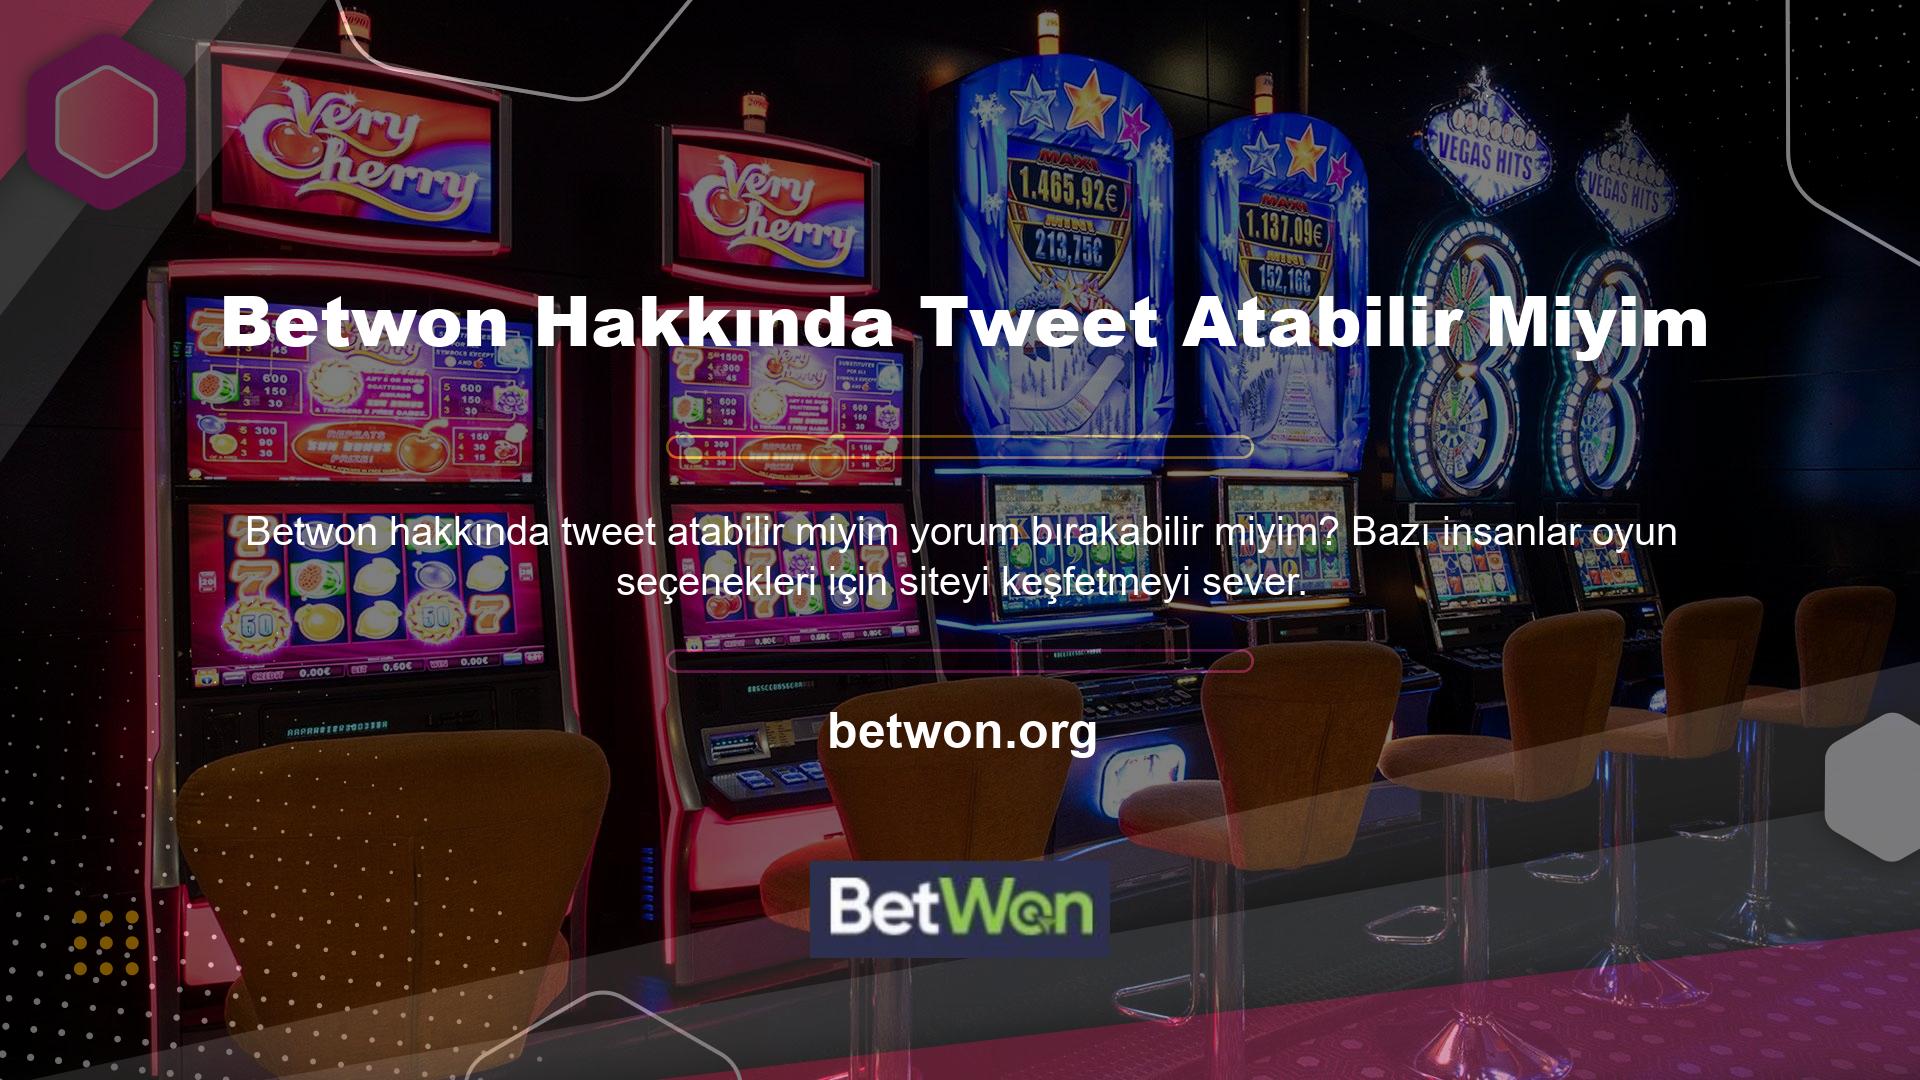 Yani Betwon casino hizmetlerini değerlendirmek isterseniz iki önemli bölümle karşılaşacaksınız: Slotlar ve Canlı Casino